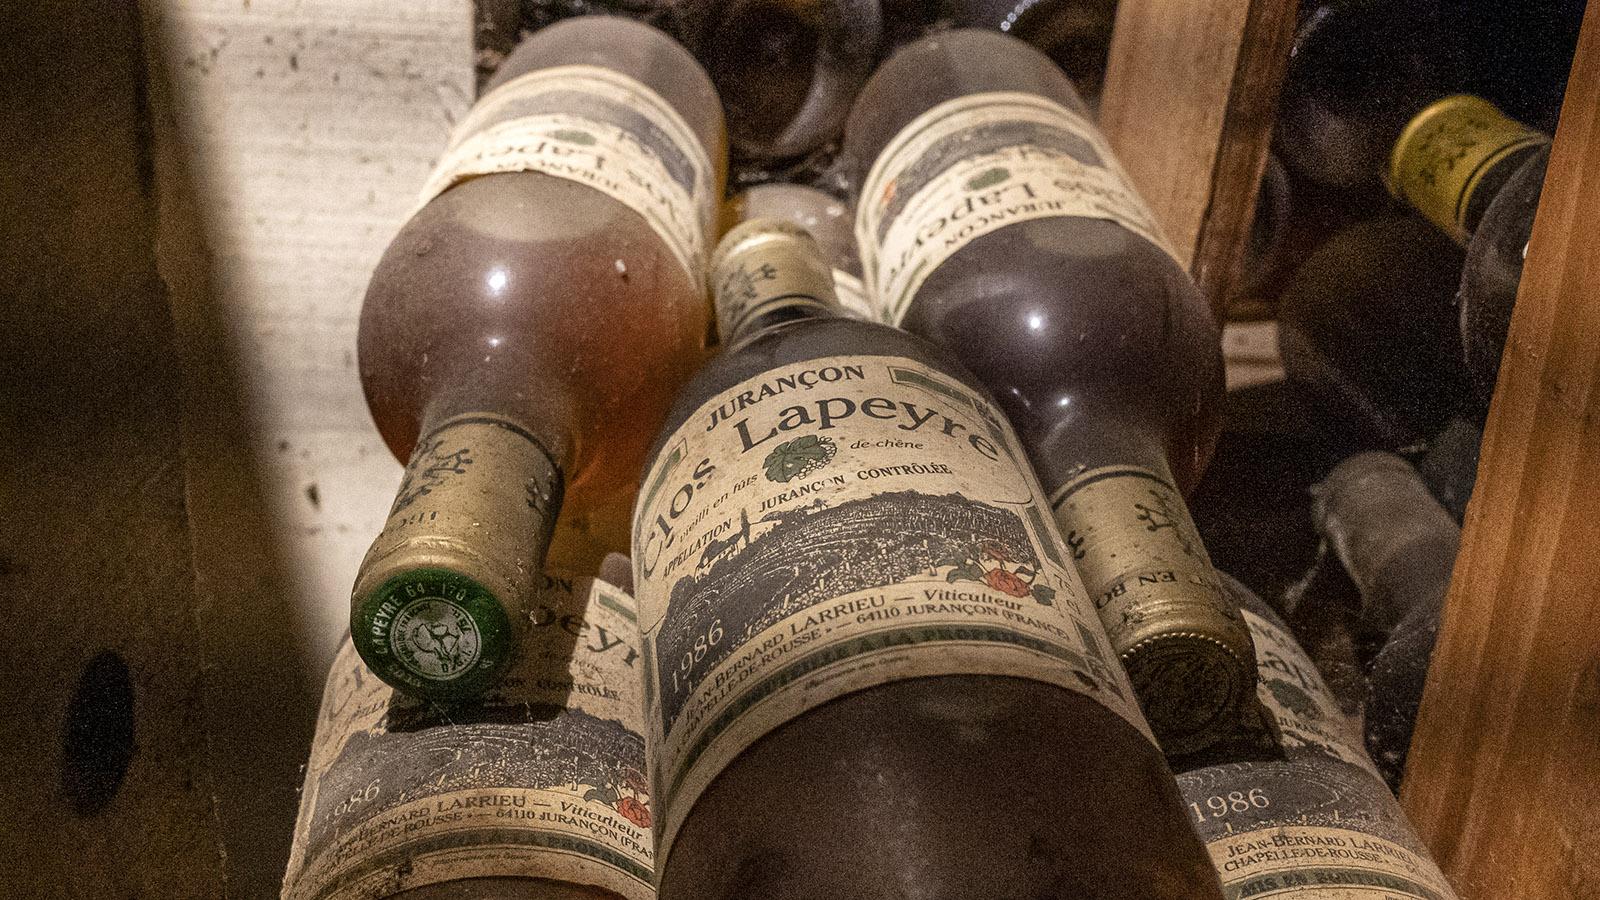 Von 1985 stammen diese Flaschen. Foto: Hilke Maunder